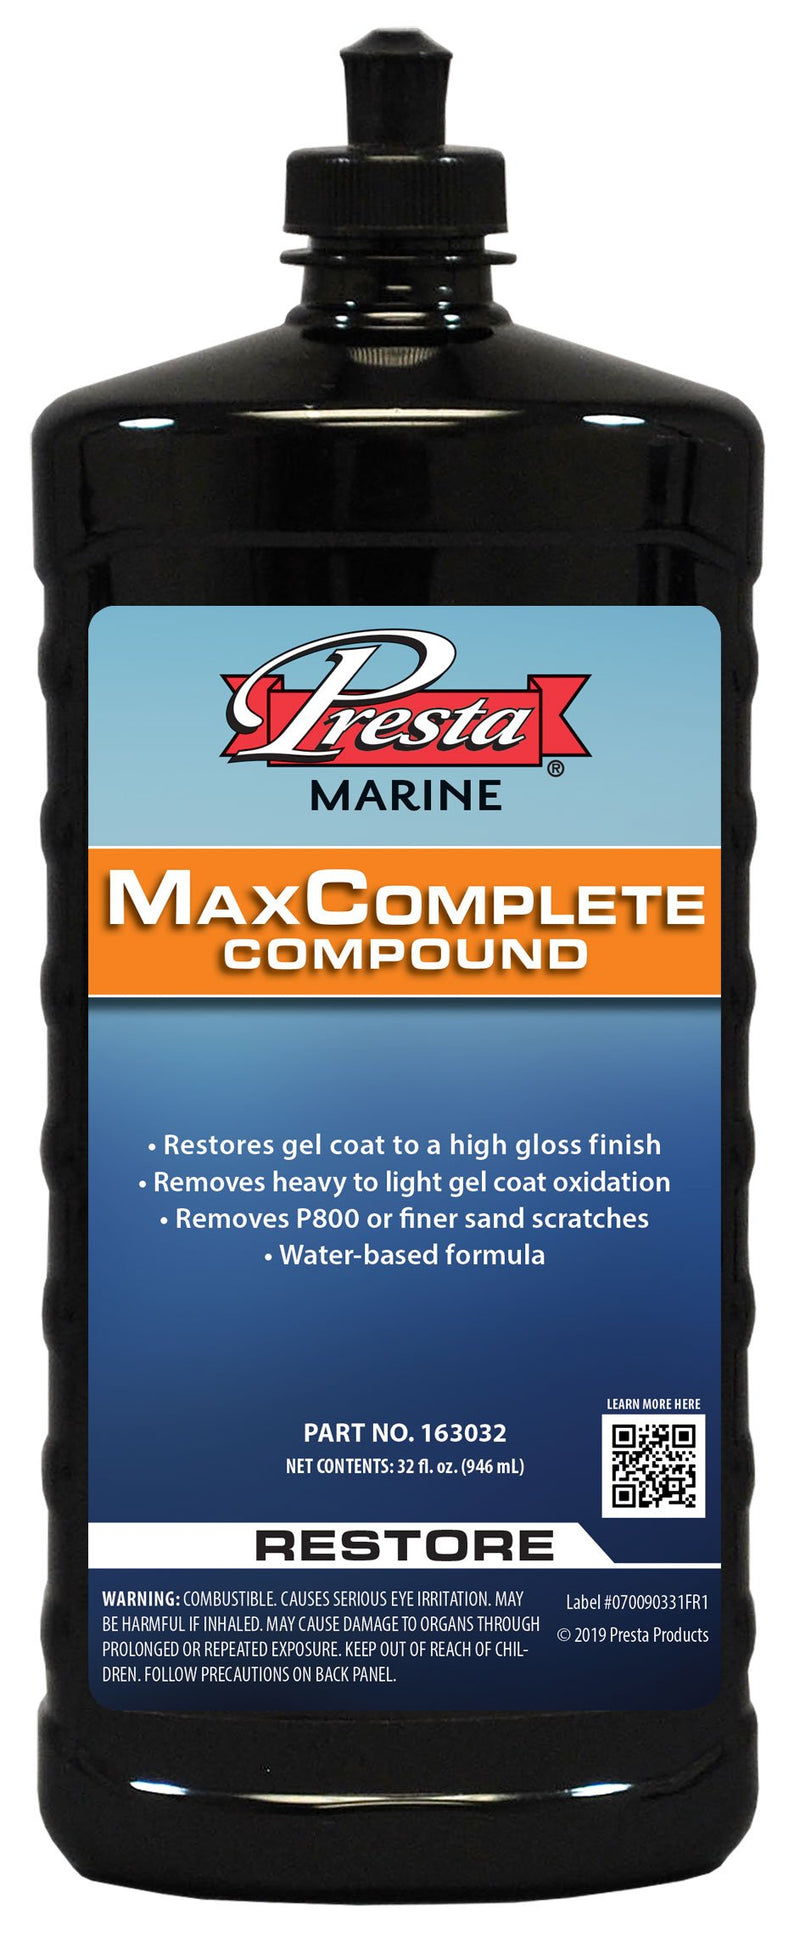 MaxComplete Compound 32 oz bottle